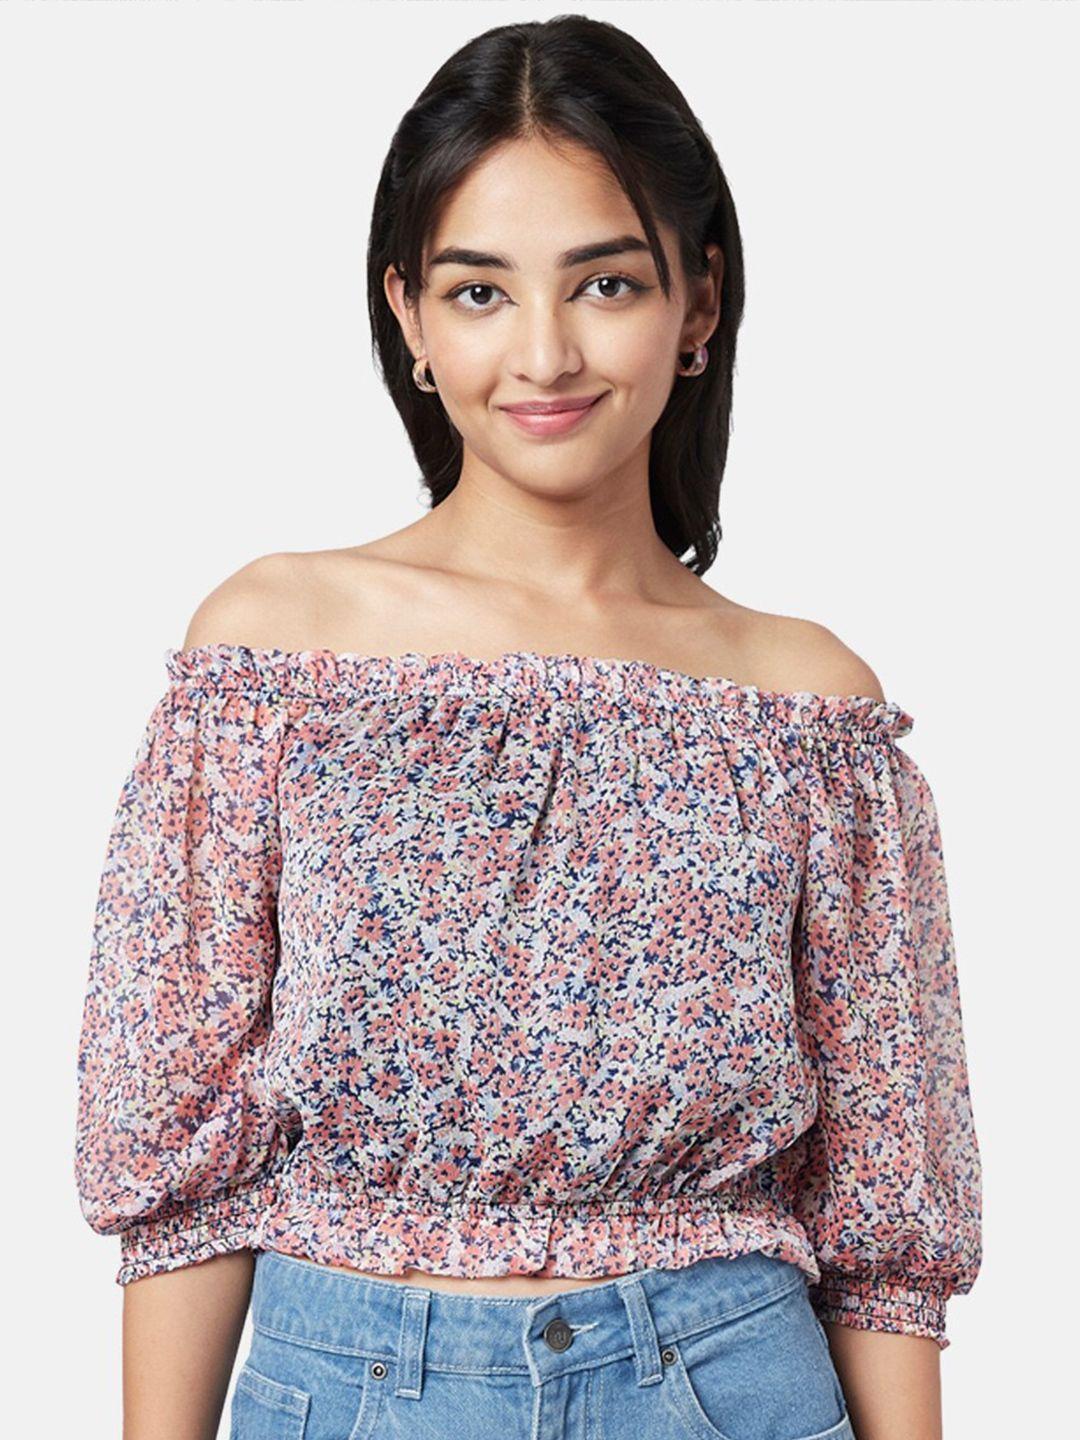 yu by pantaloons floral printed off-shoulder bardot top